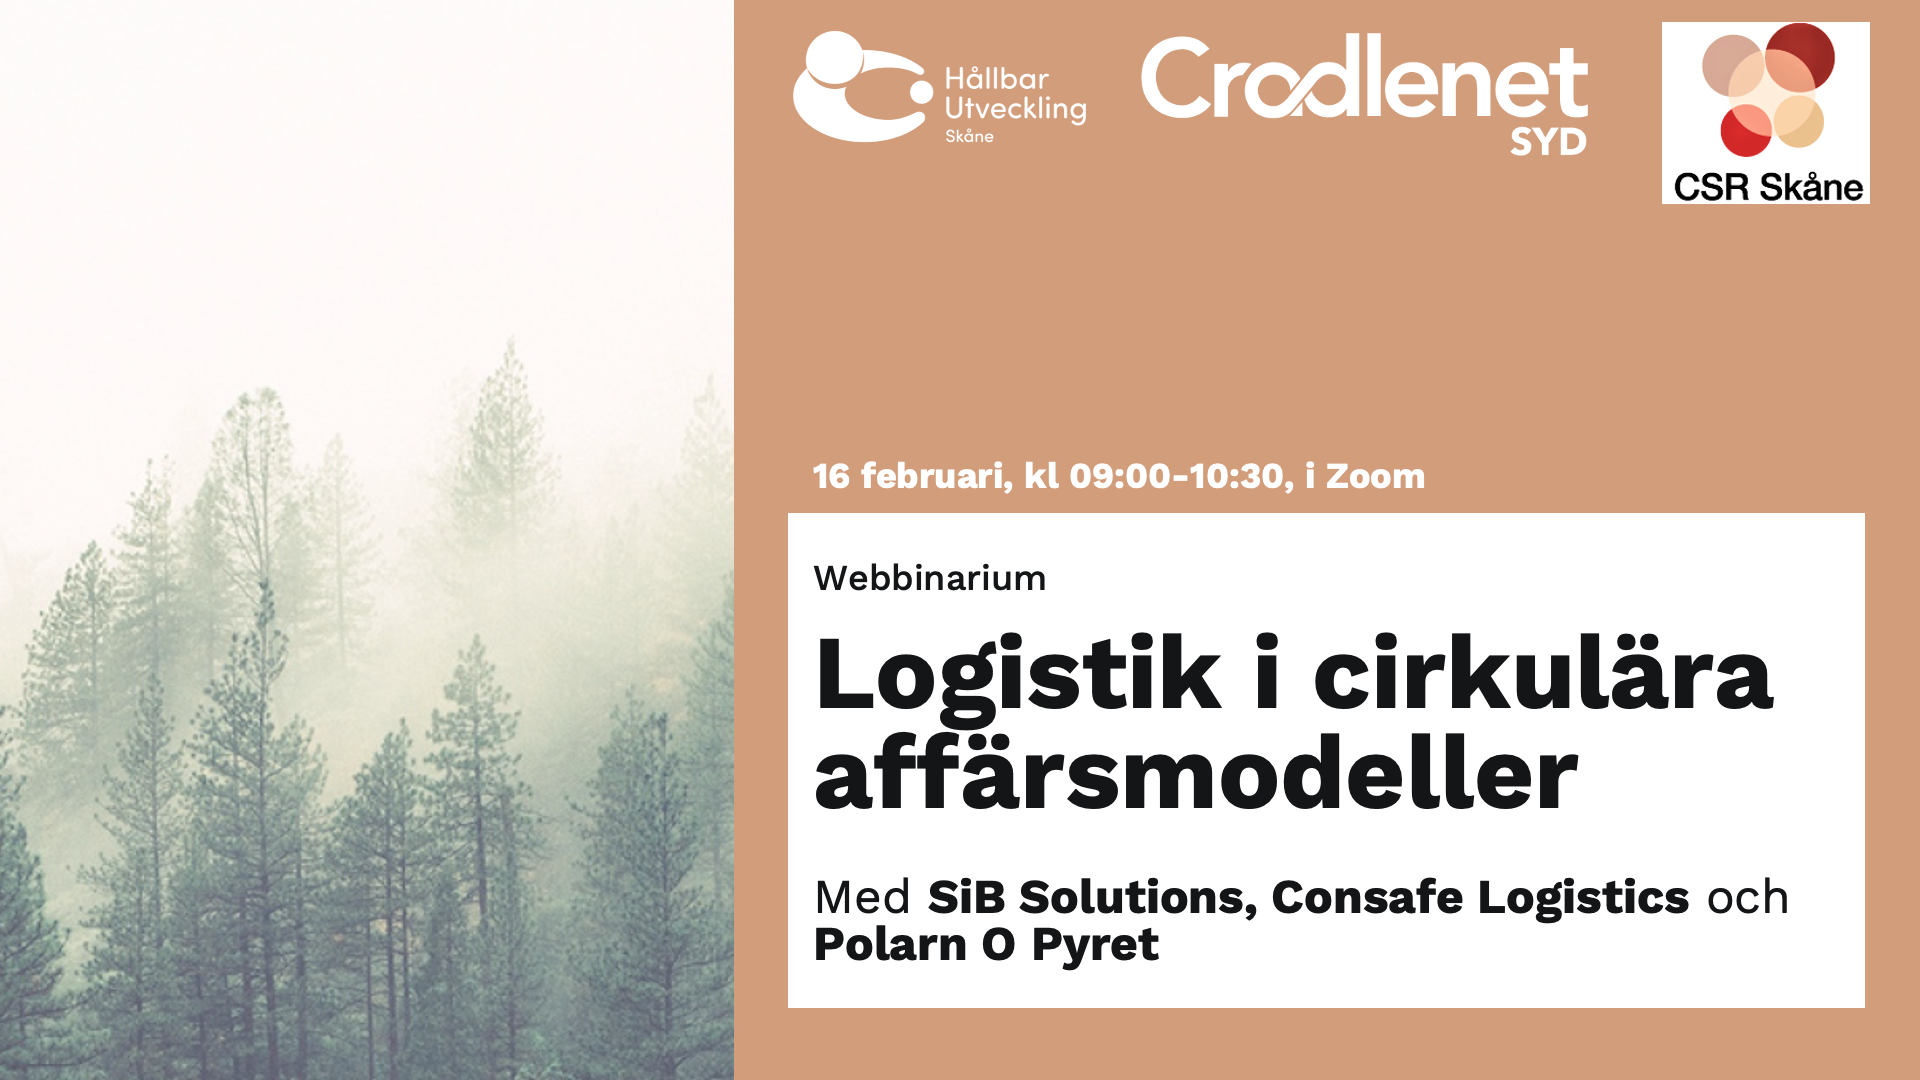 Bild med titeln på eventet, "Logistik i cirkulära affärsmodeller", samt loggorna för Hållbar Utveckling Skåne, Cradlenet Syd och CSR Skåne